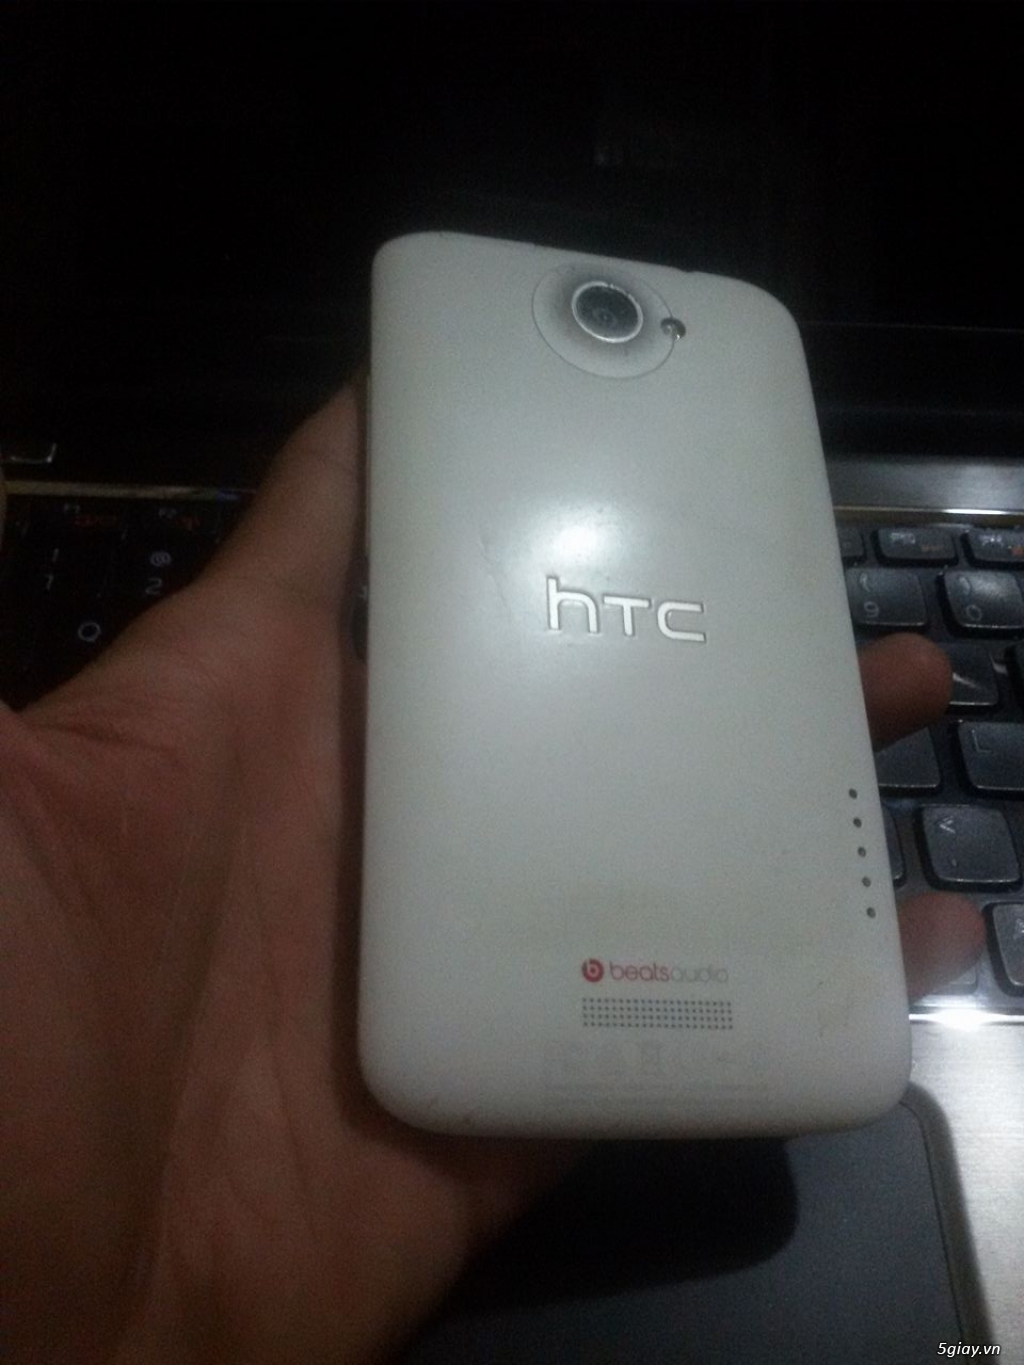 HTC one X 32 GB , quard core tegra 1.5 GHZ , man hinh HD - 1